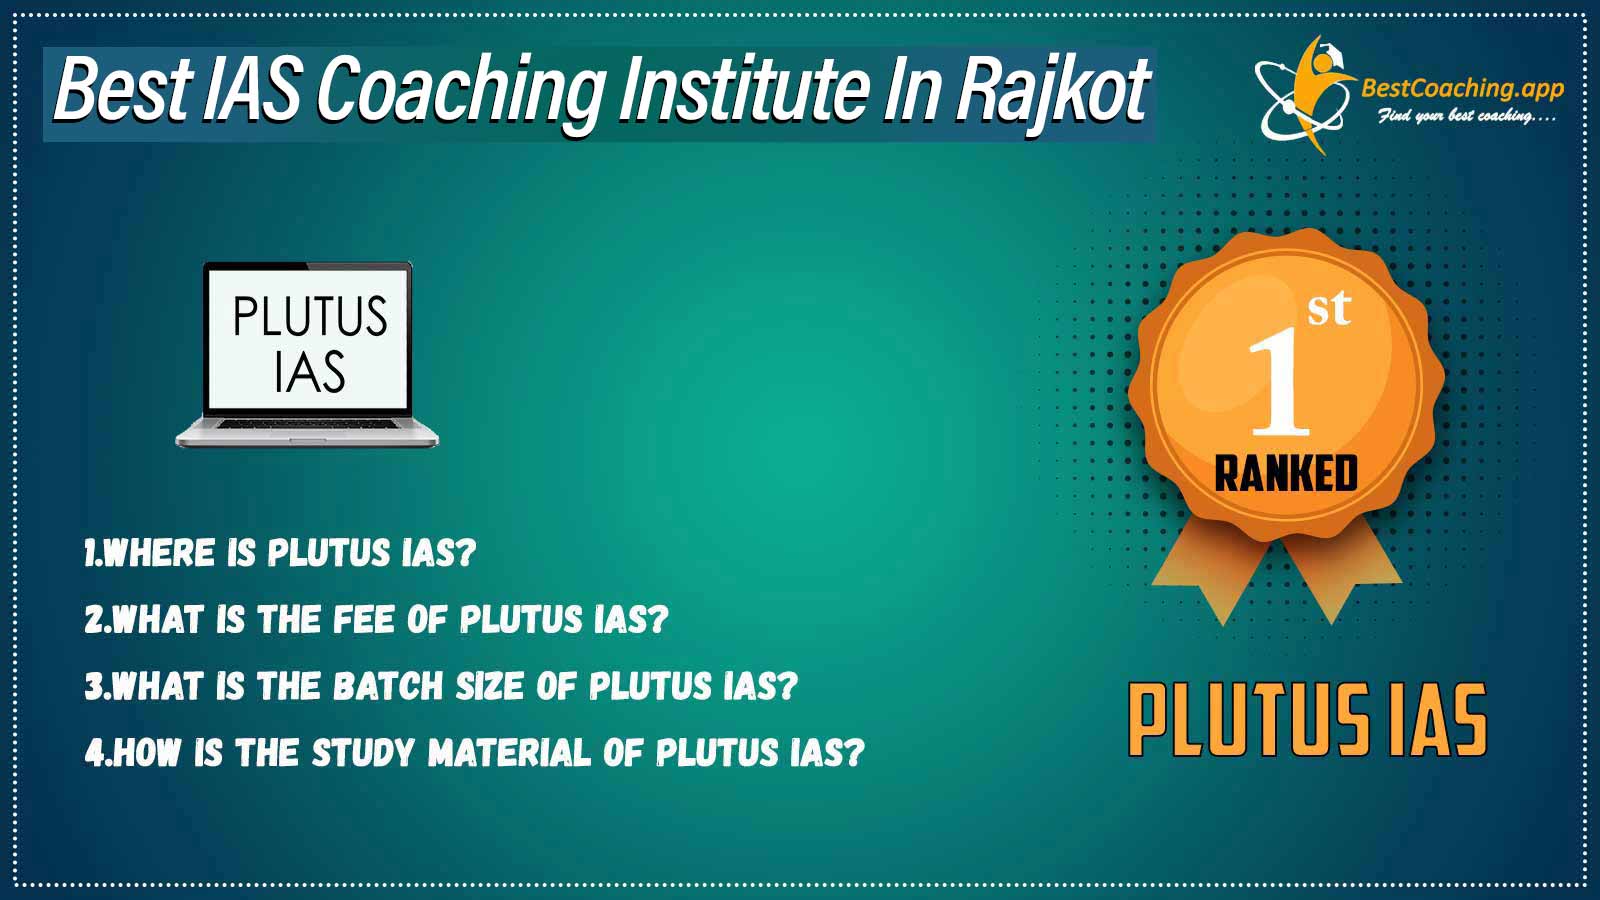 Top IAs Coaching in Rajkot